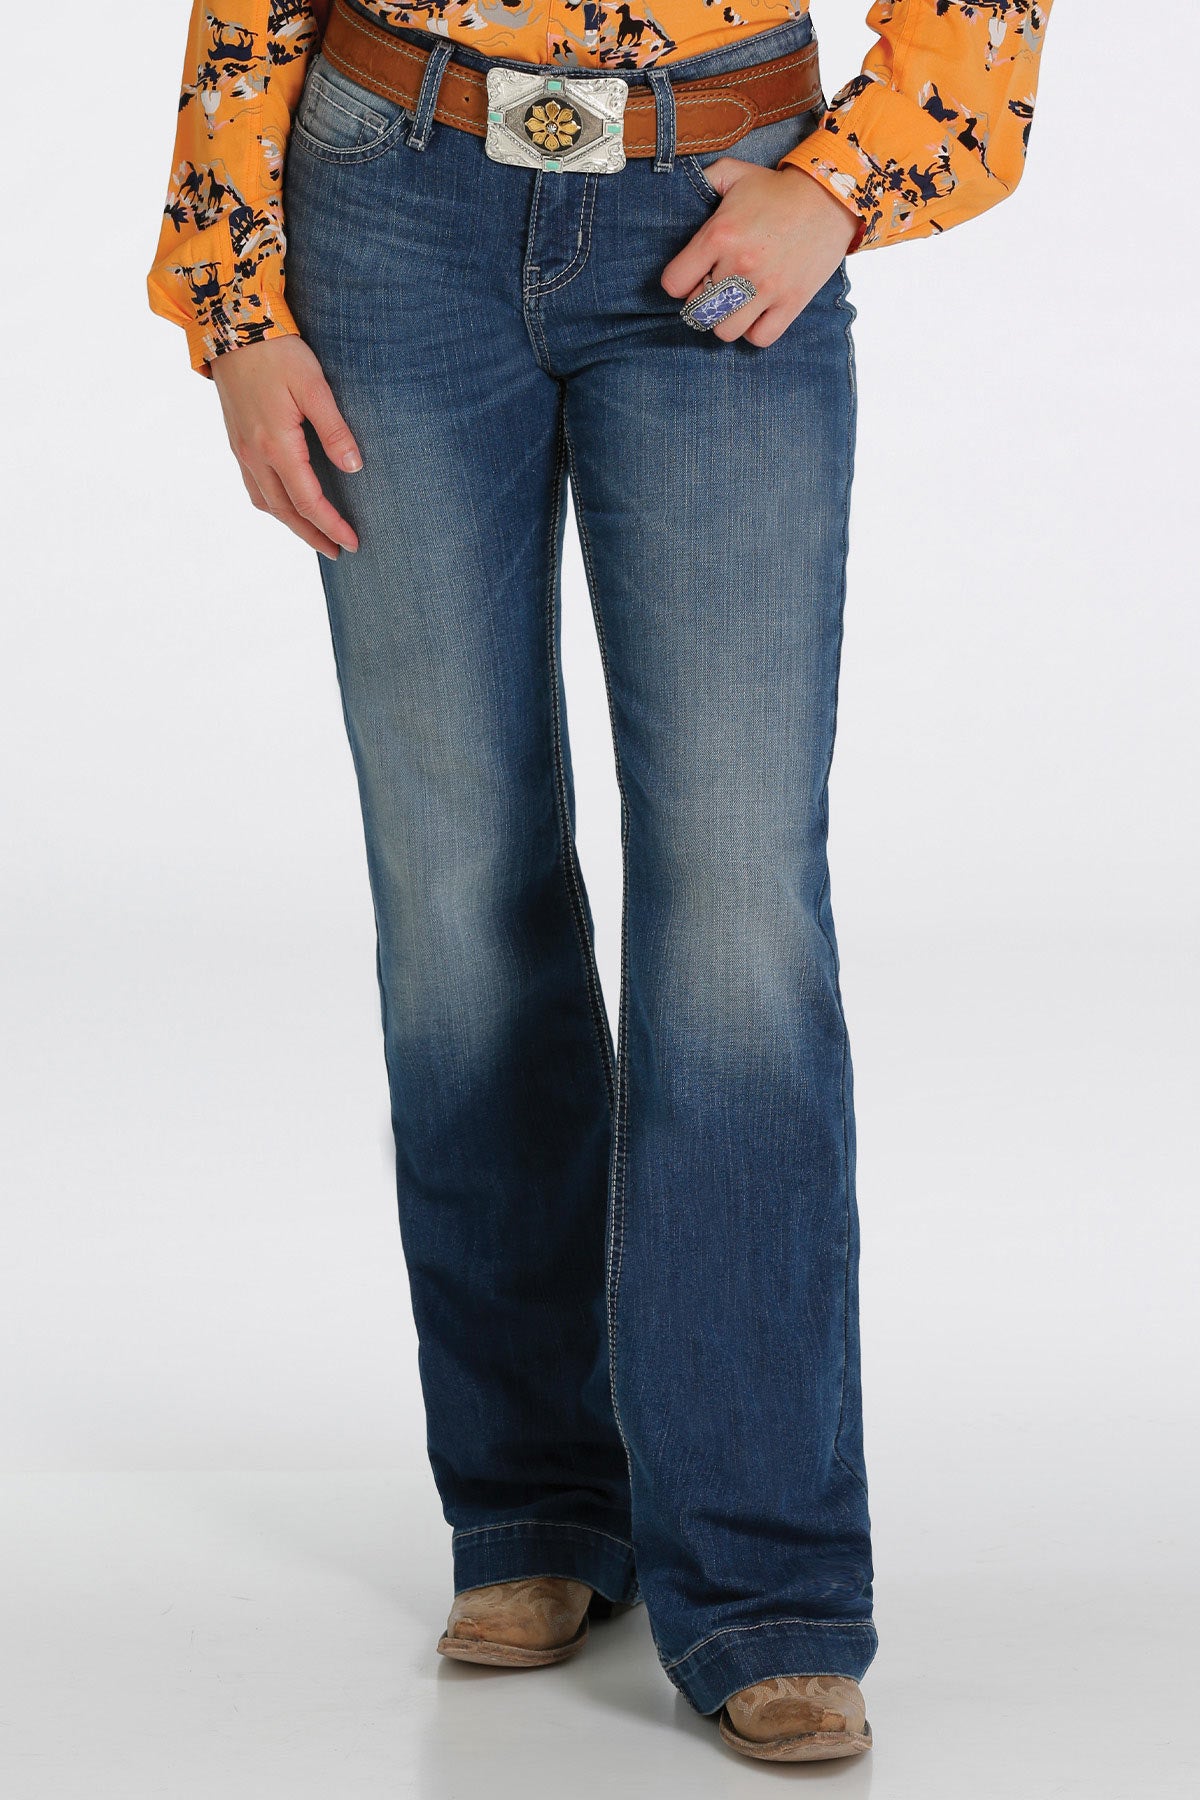 Cruel Denim Women's Hayley Indigo Medium Stone Trouser Jeans